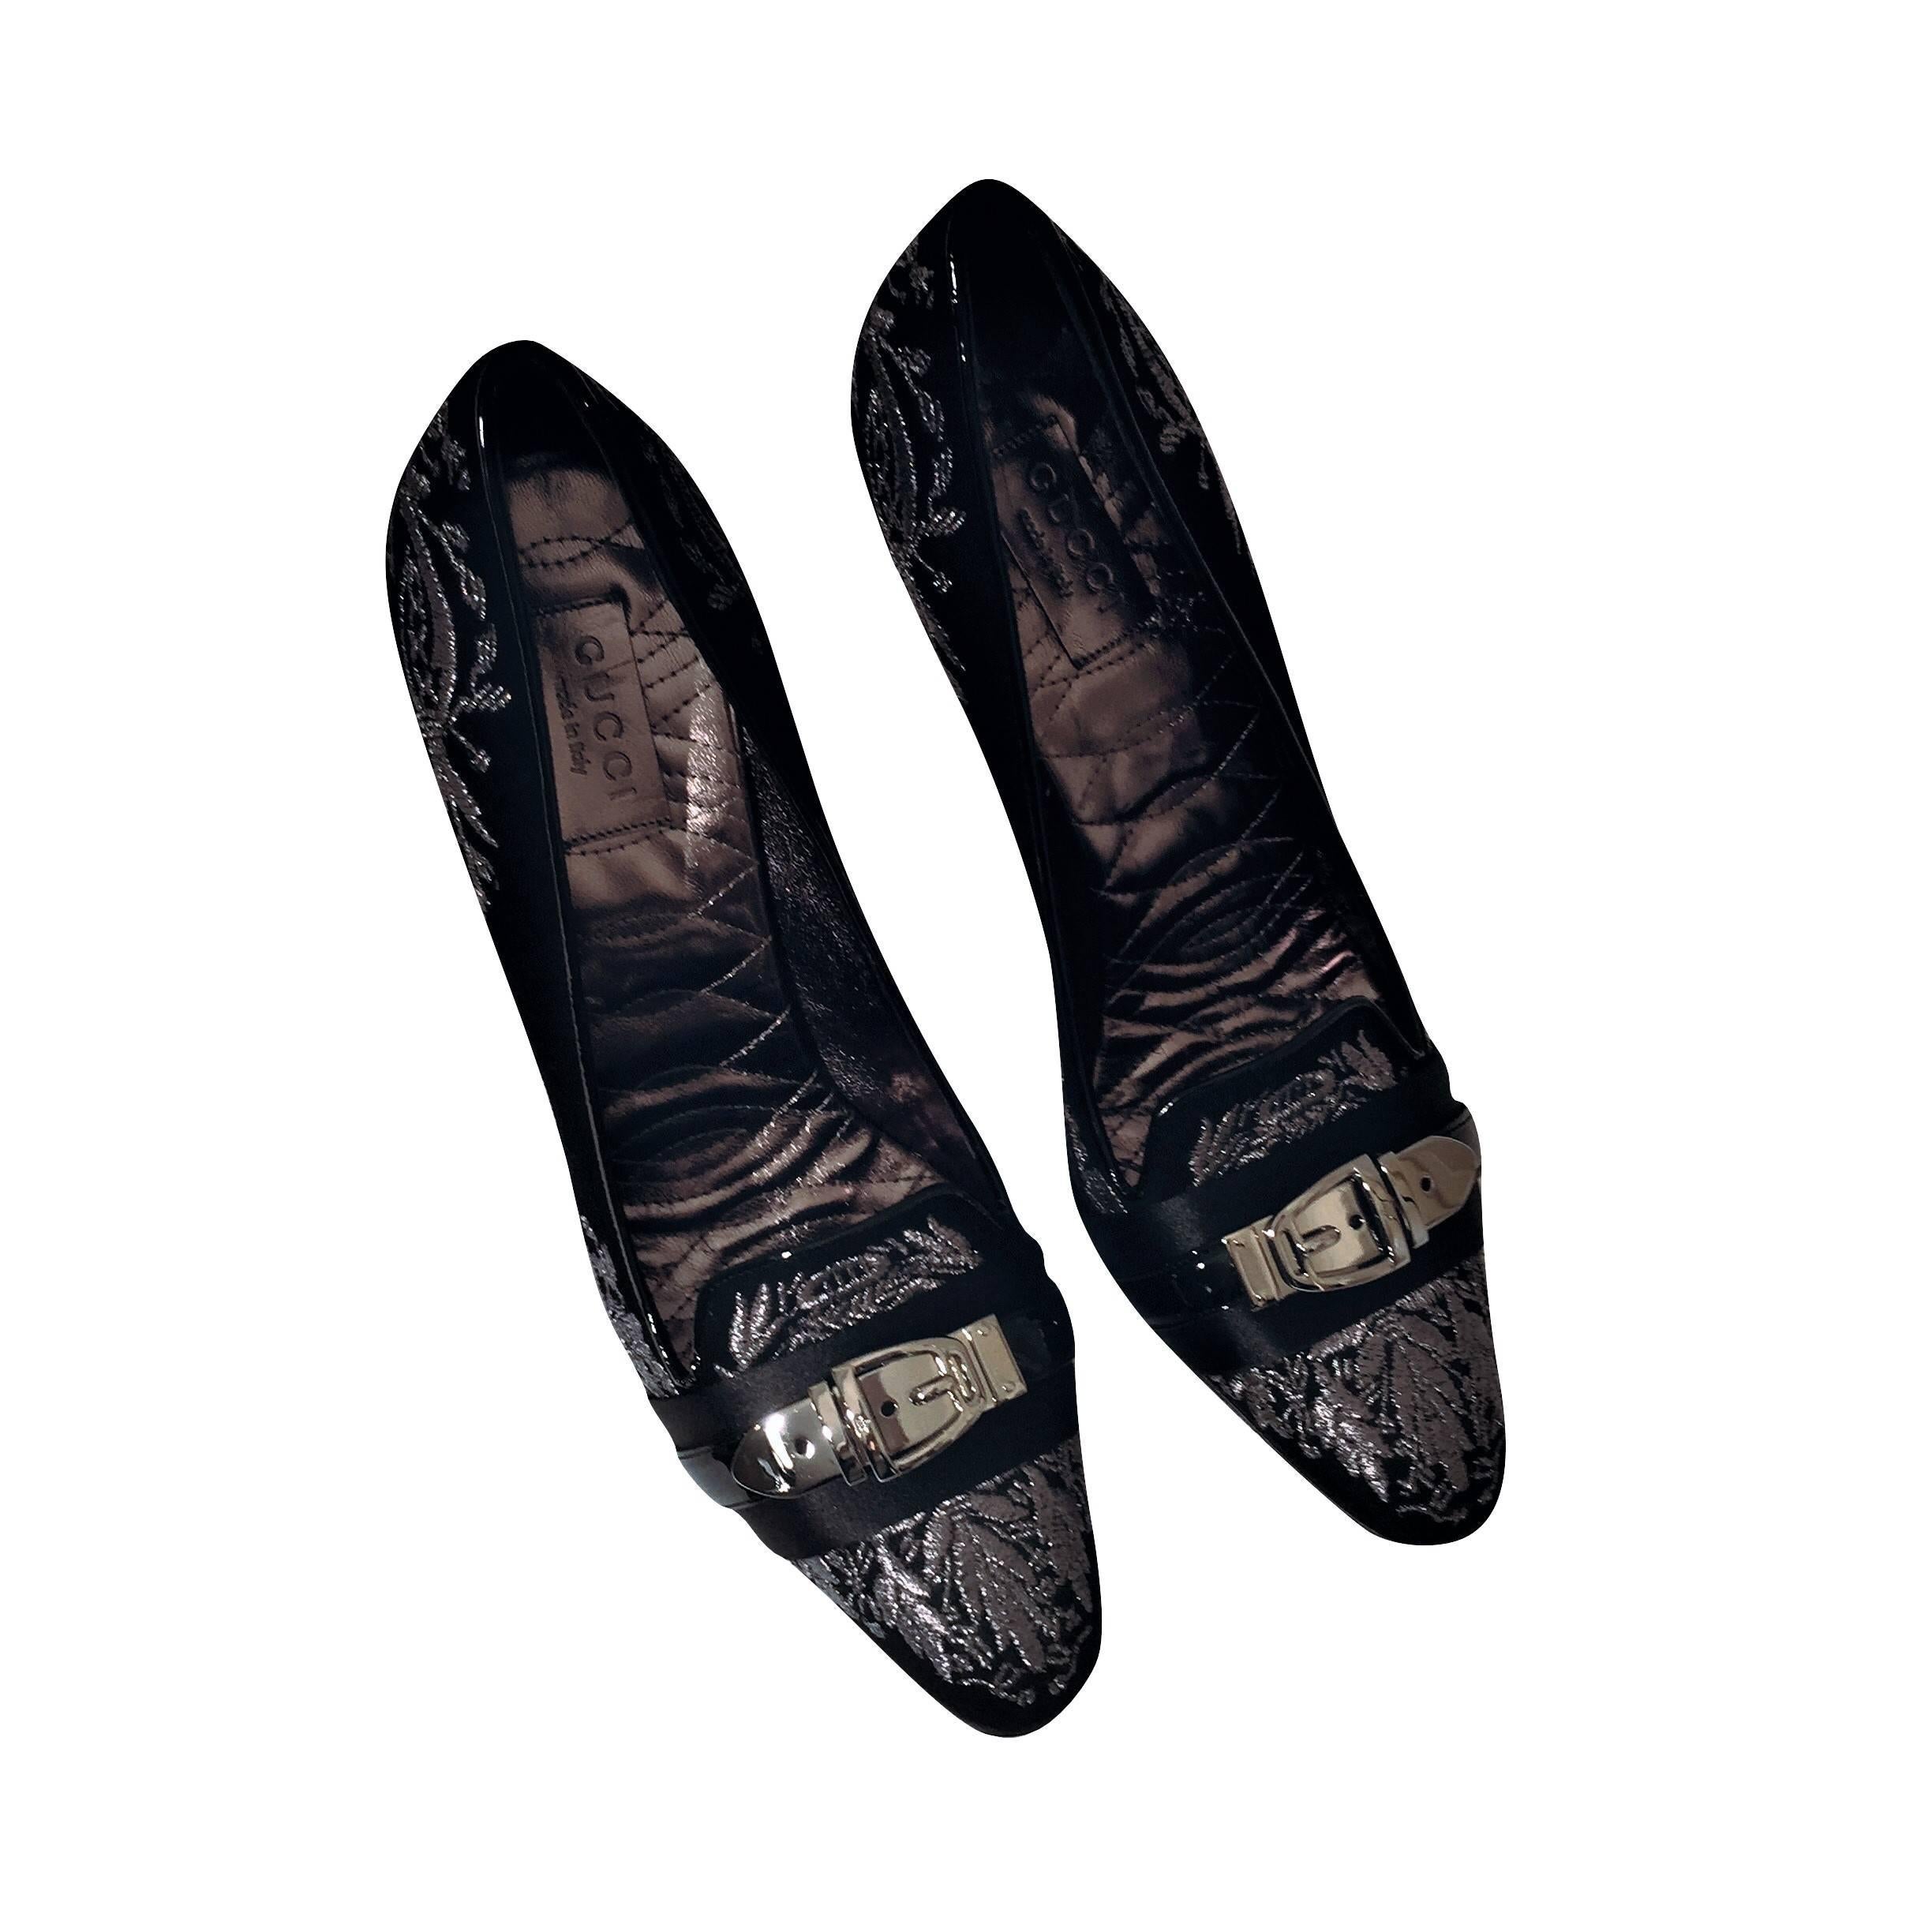 New Gucci Runway Suede Brocade Buckle Heels Pumps Sz 37.5 8